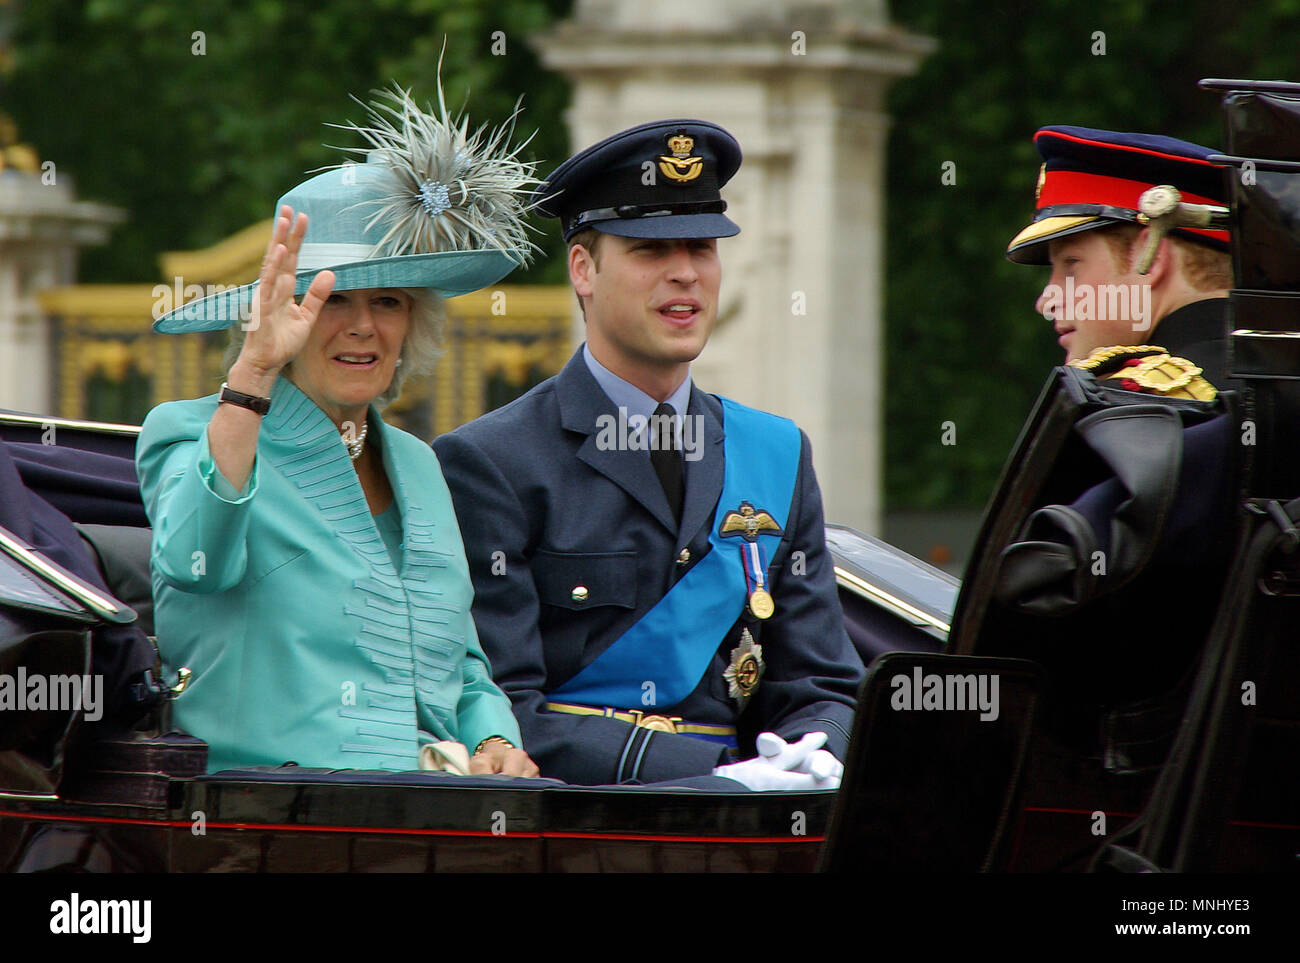 Prince William dans la RAF, uniforme de la Royal Air Force, Duchesse de Cornouailles Camilla et Prince Harry Wales dans le transport pendant Trooping the Colour, Londres, Royaume-Uni Banque D'Images